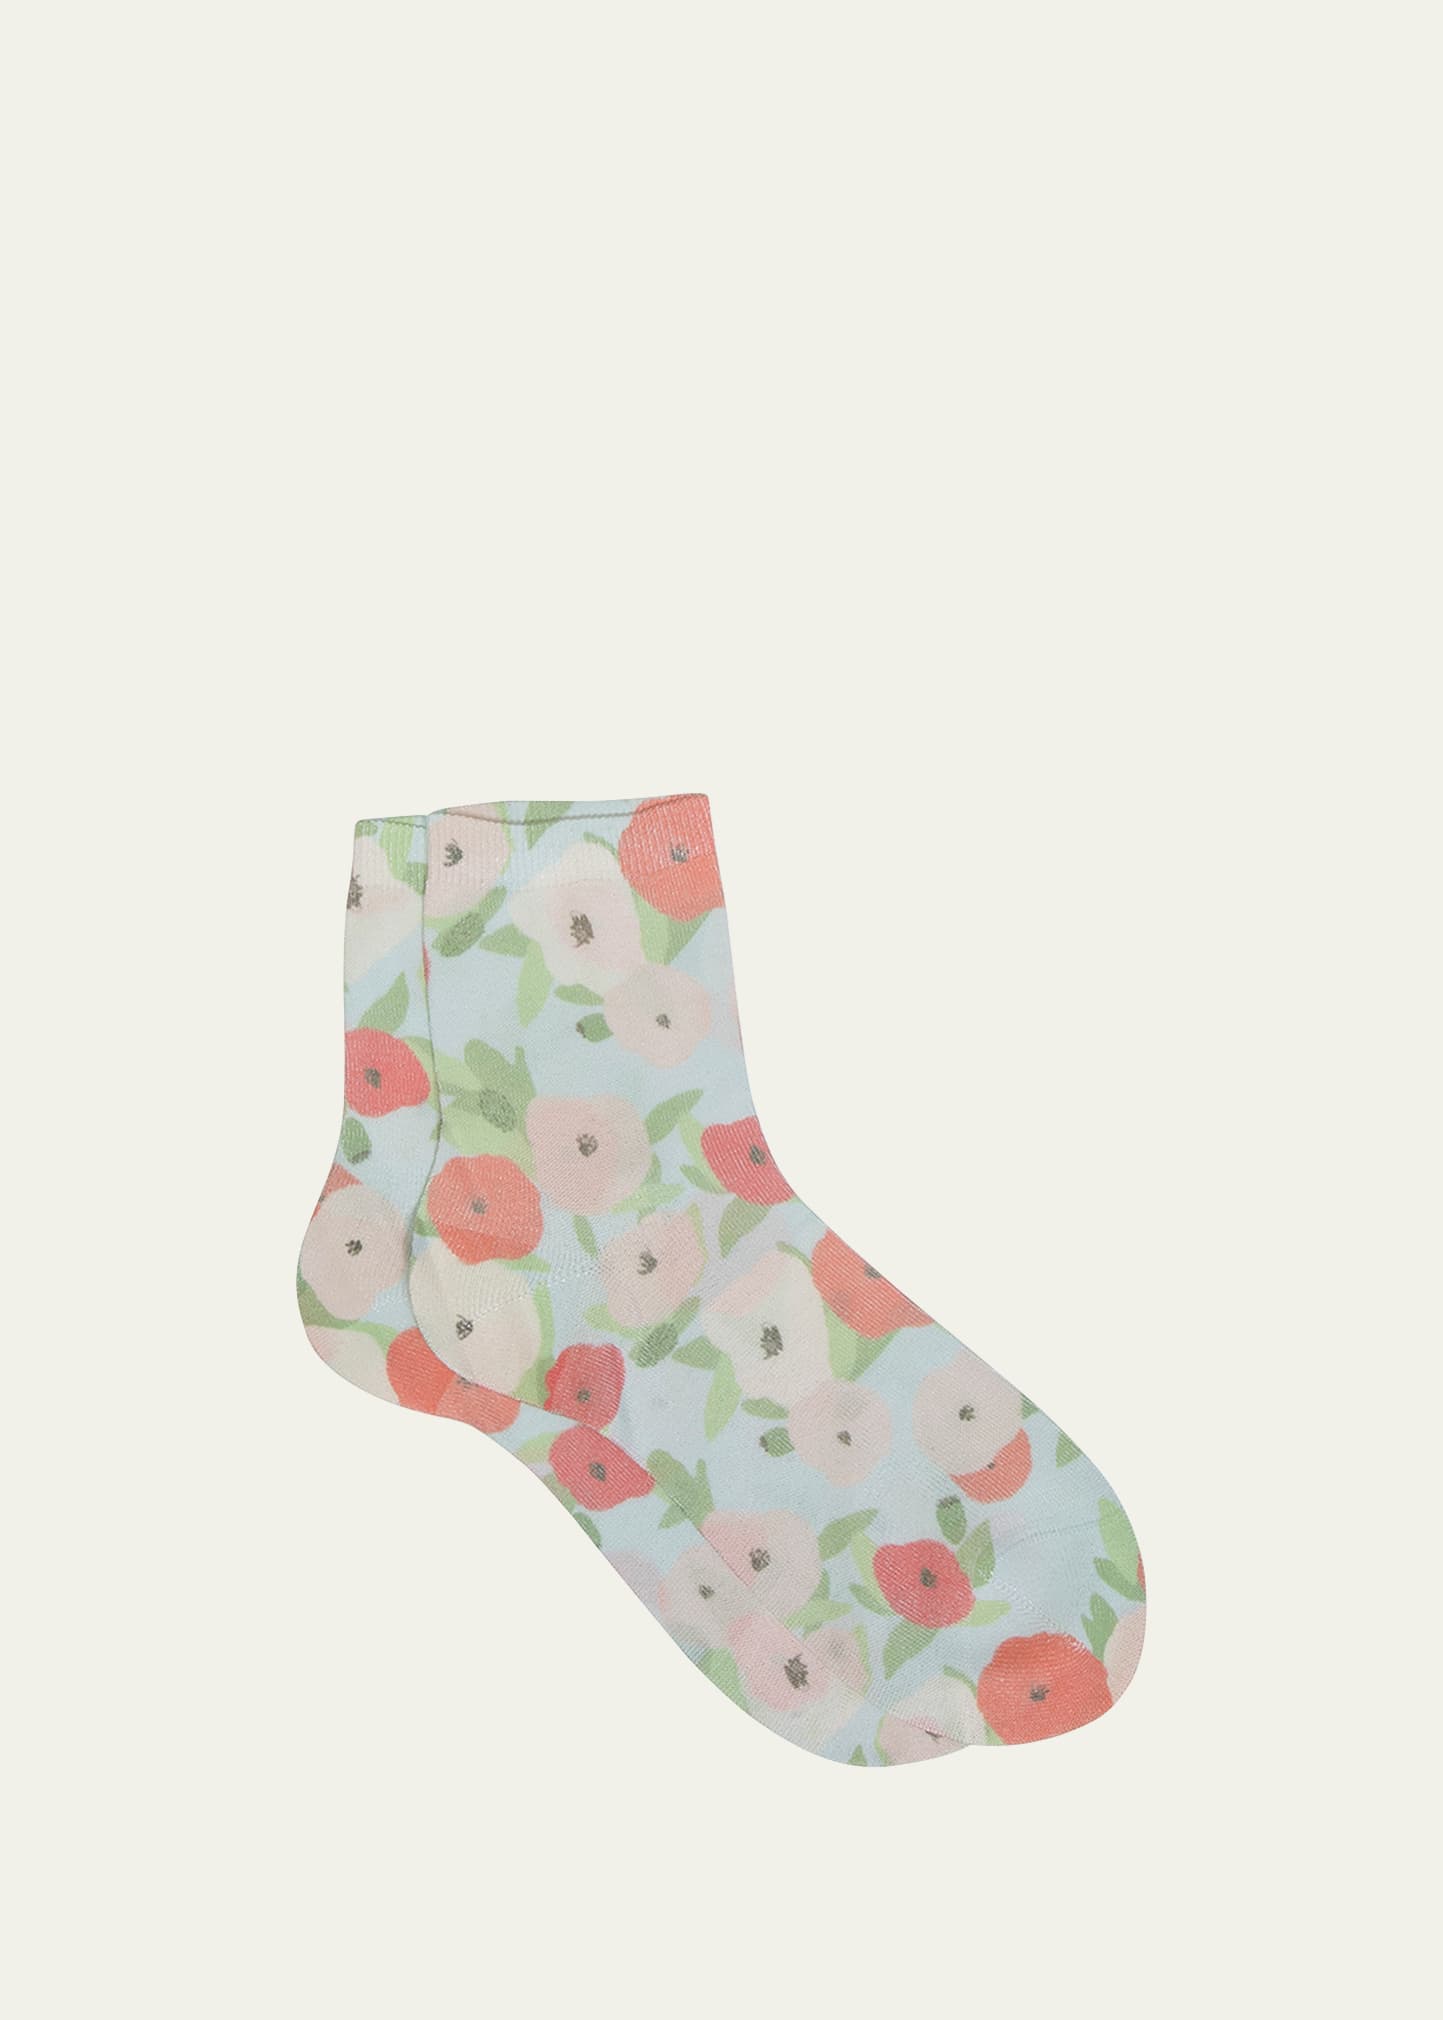 Maria La Rosa Spring Floral-Print Short Crew Socks